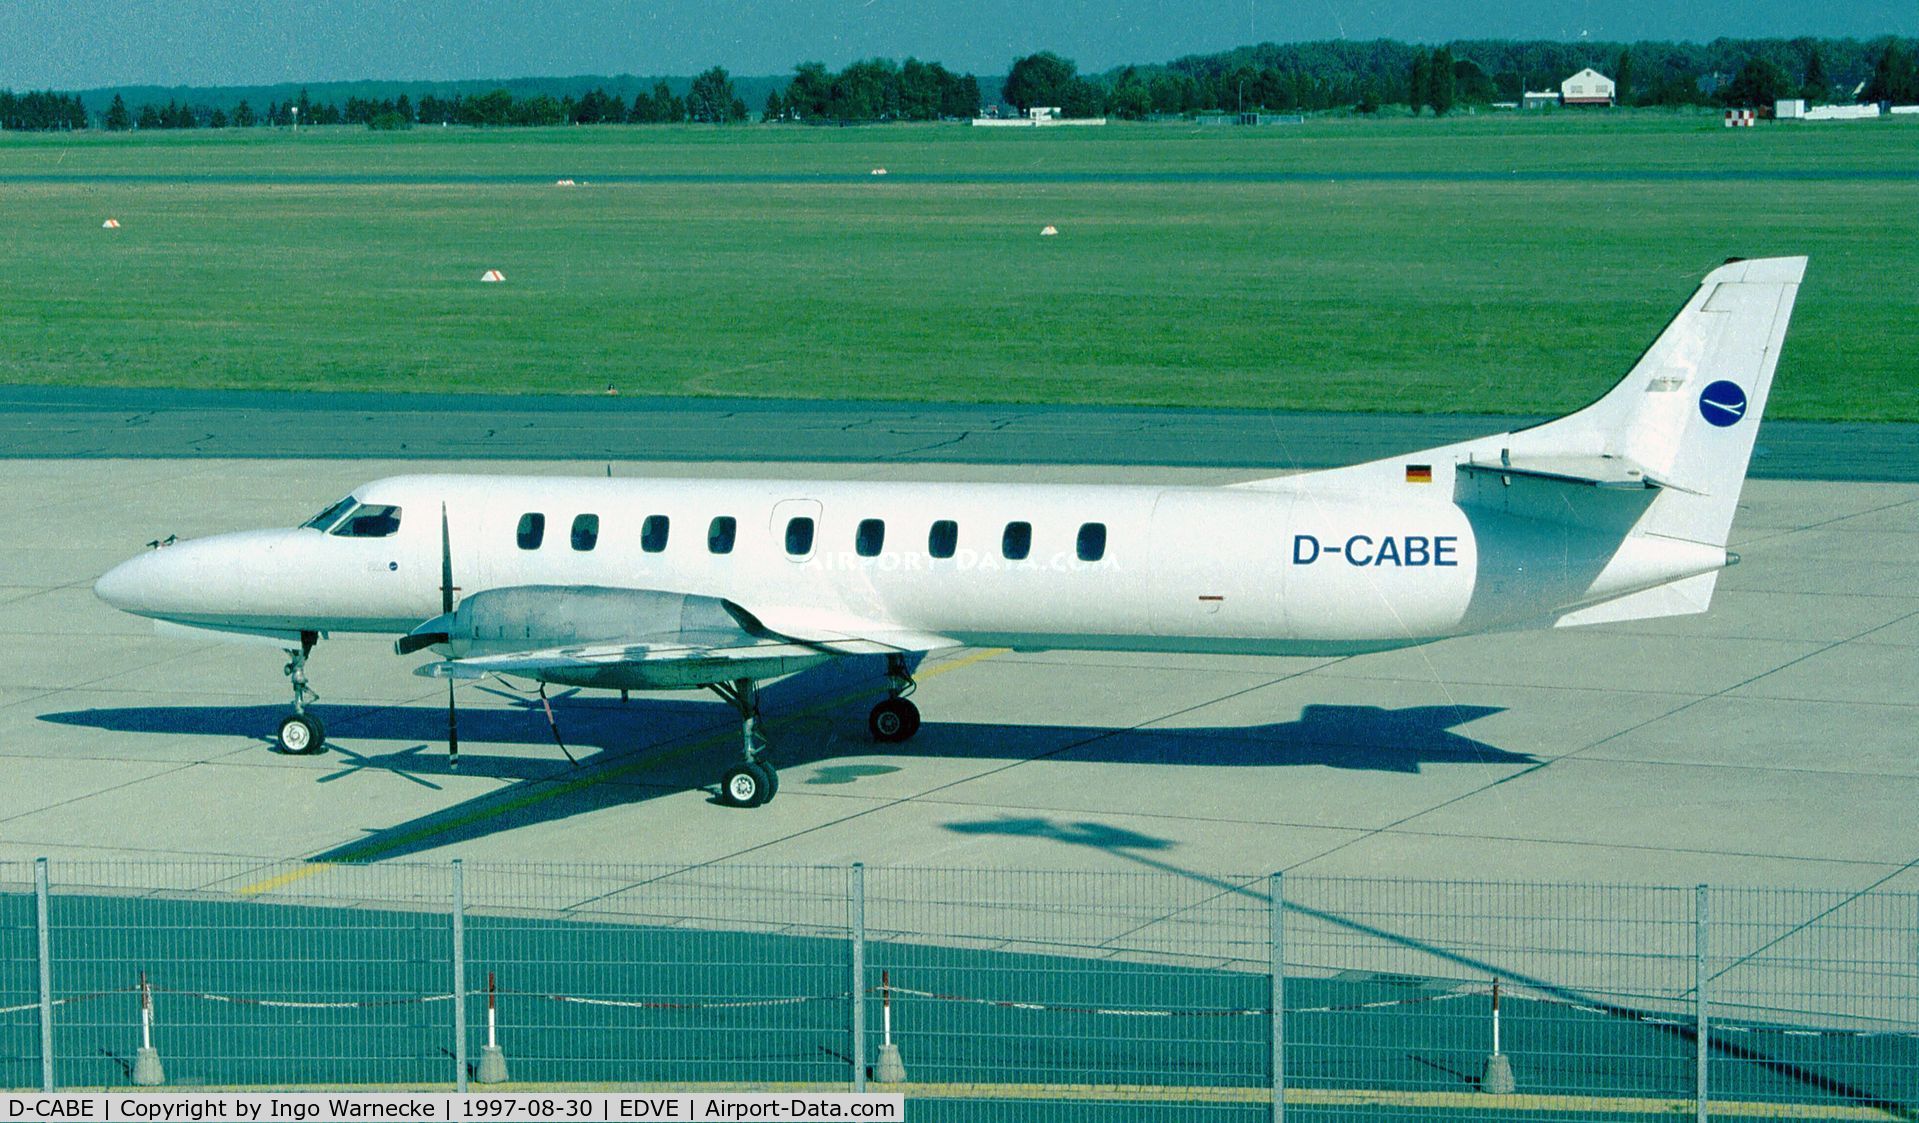 D-CABE, 1982 Fairchild SA-227AC Metro III C/N AC-523, Swearingen SA-227AC Metro II at Braunschweig-Waggum airport